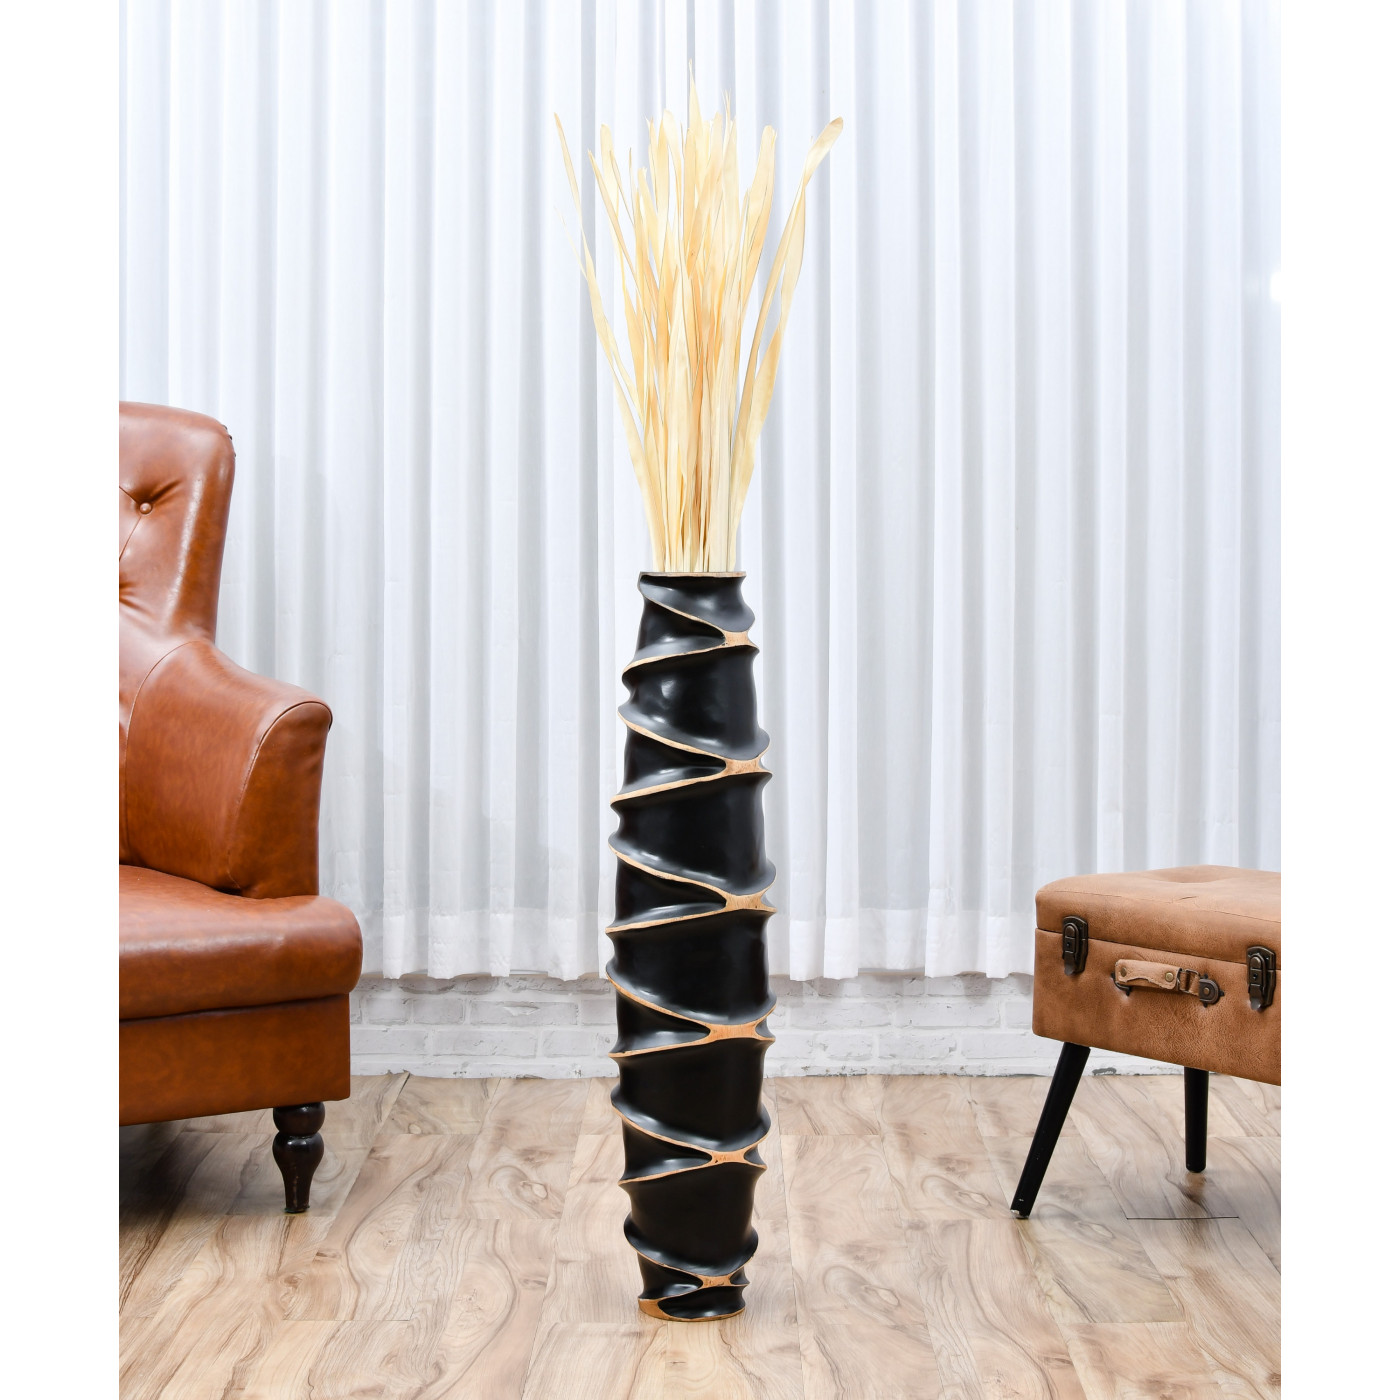 Leewadee Grande Vaso da Terra per Rami Decorativi Vaso Alto da Interno 90 cm Legno di Mango Bianco